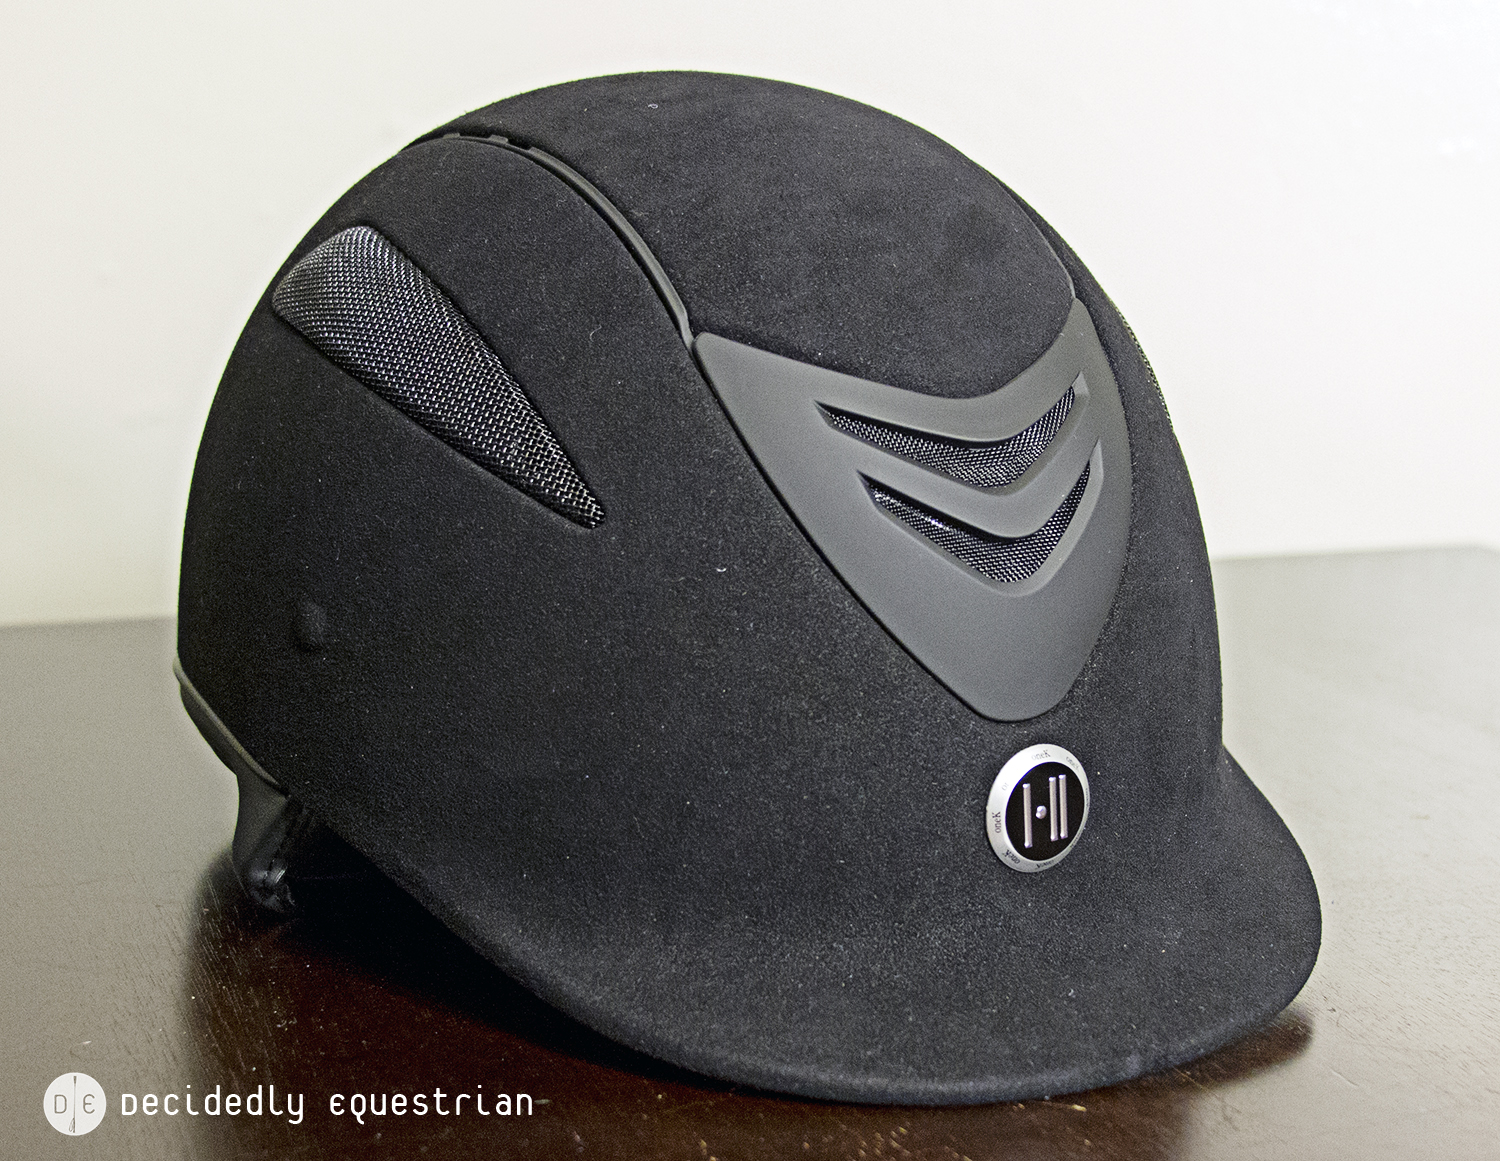 One K Defender Suede Helmet Review